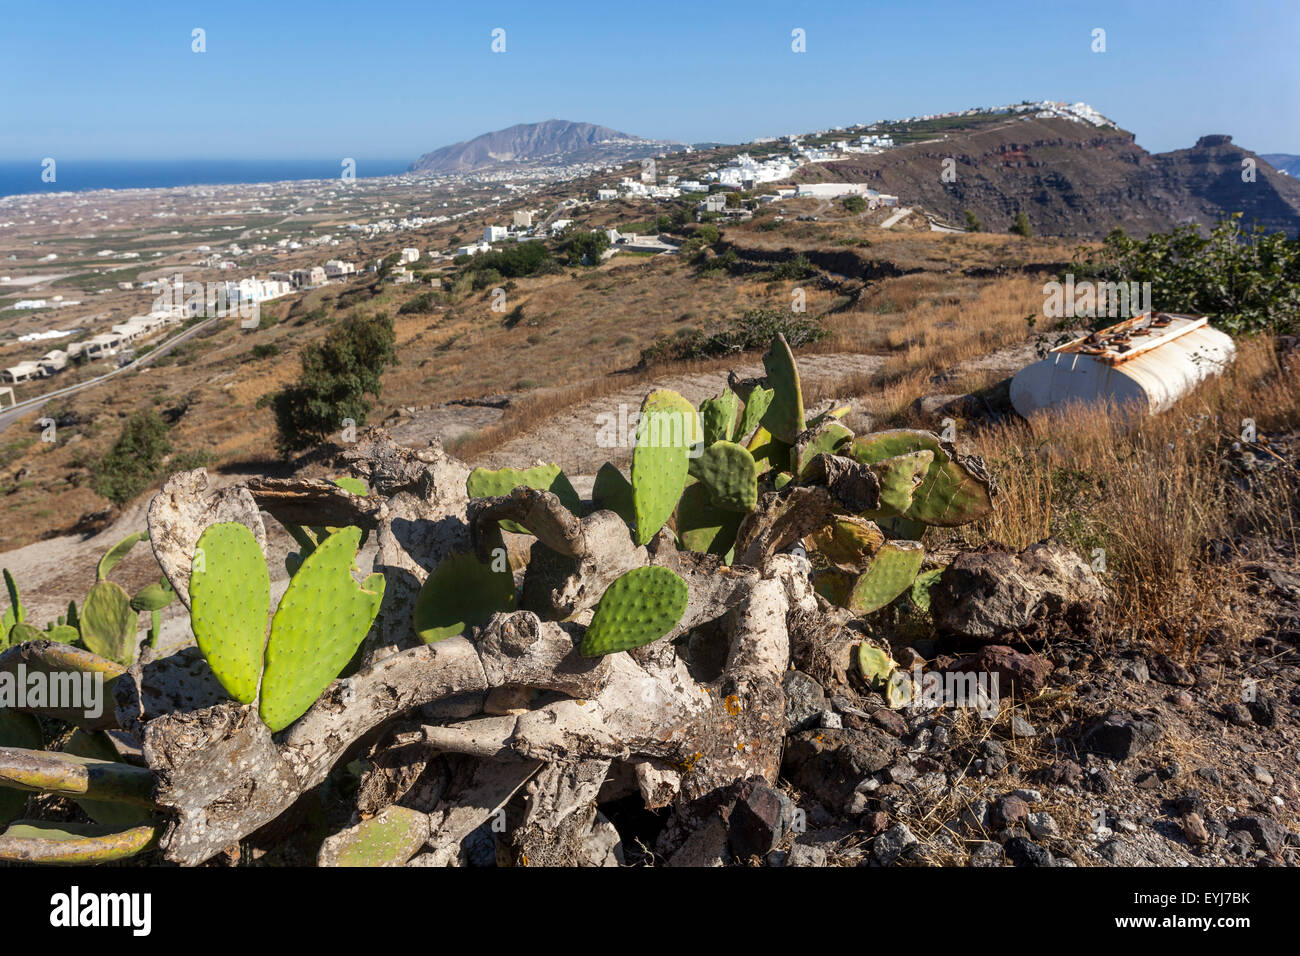 La strada da Oia a Fira, prickly pera cactus, opuncia, Santorini, Grecia Isole piante Foto Stock